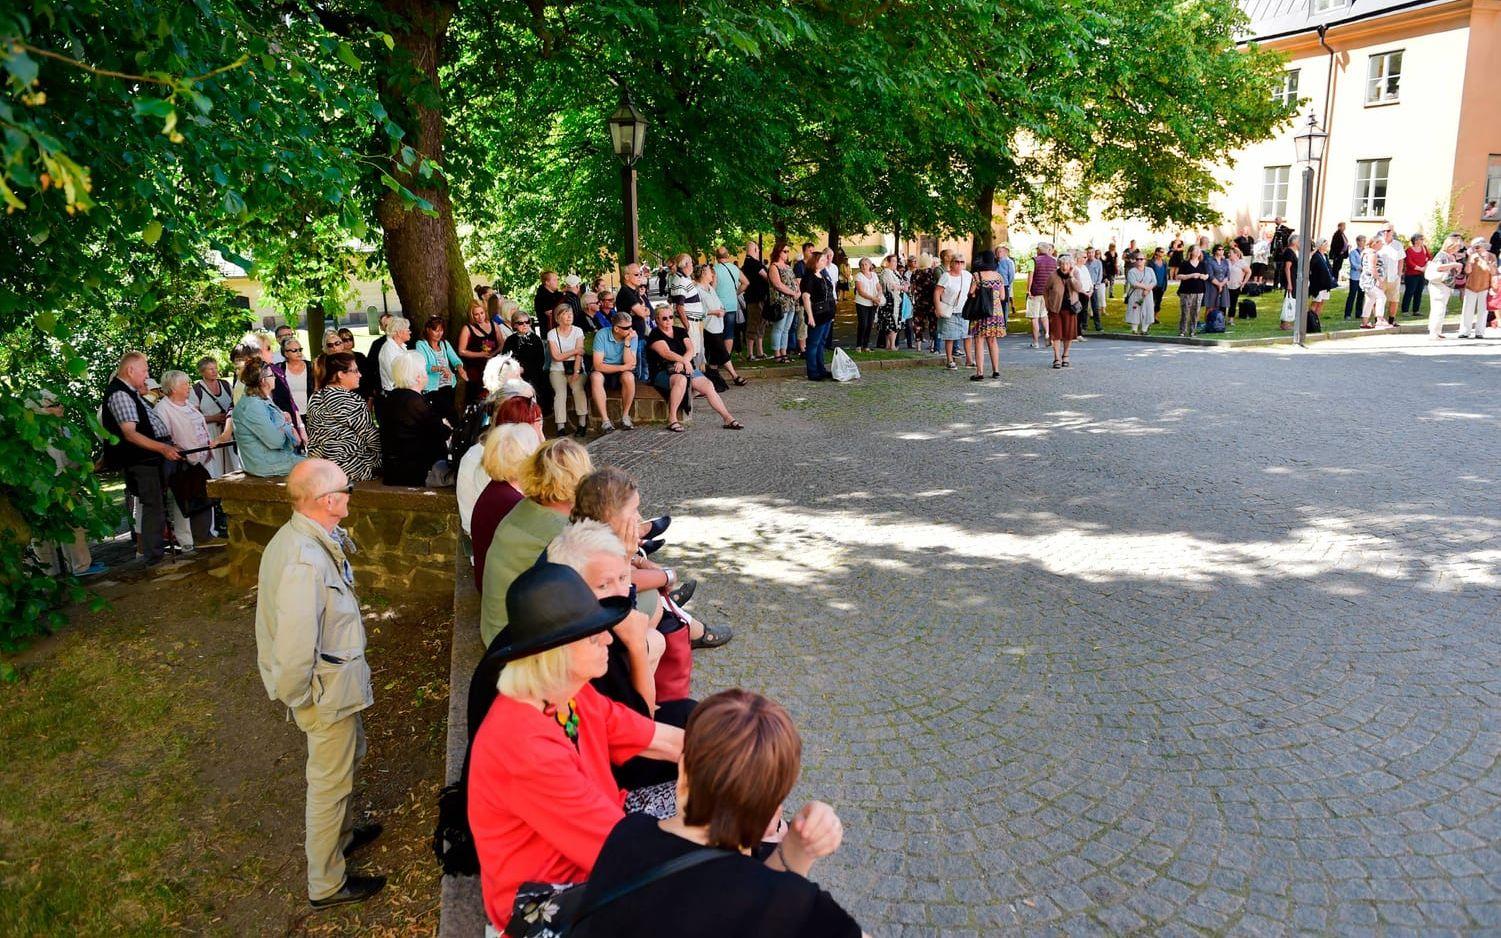 Mängder av människor samlades vid Katarina kyrka på Södermalm i Stockholm. Foto: TT